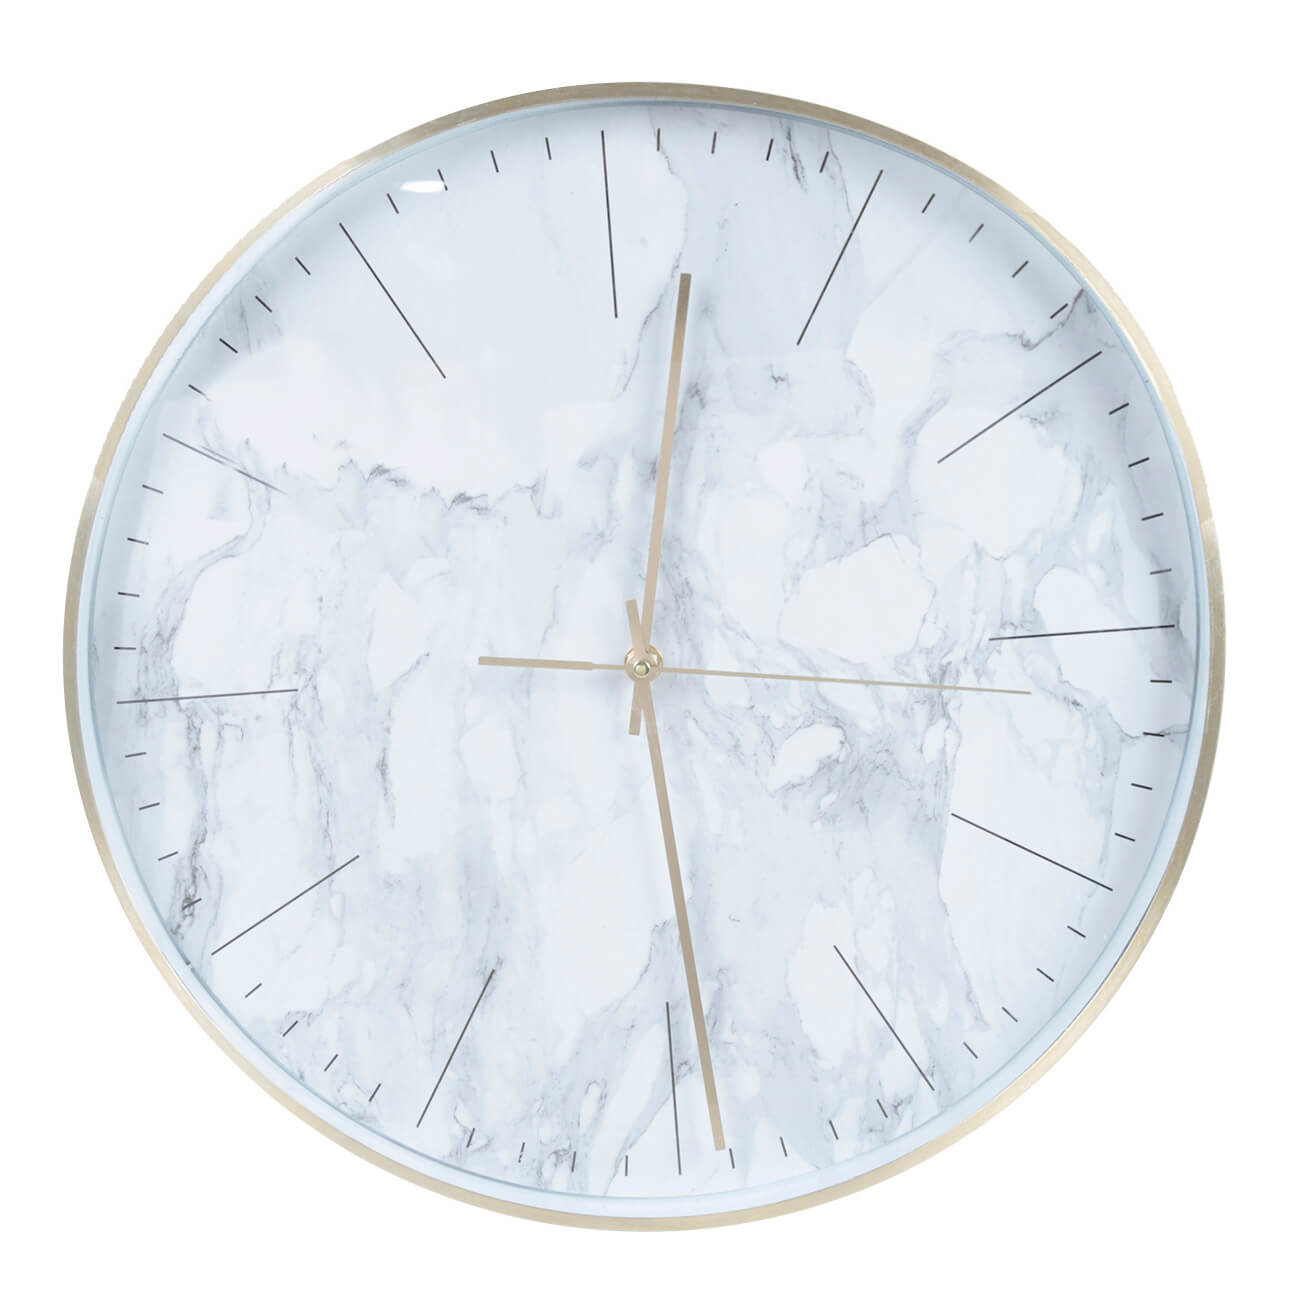 Часы настенные, 40 см, пластик/стекло, круглые, белые, Мрамор, Maniera весы напольные luazon lve 001 электронные до 180 кг 1хcr2032 стекло белые